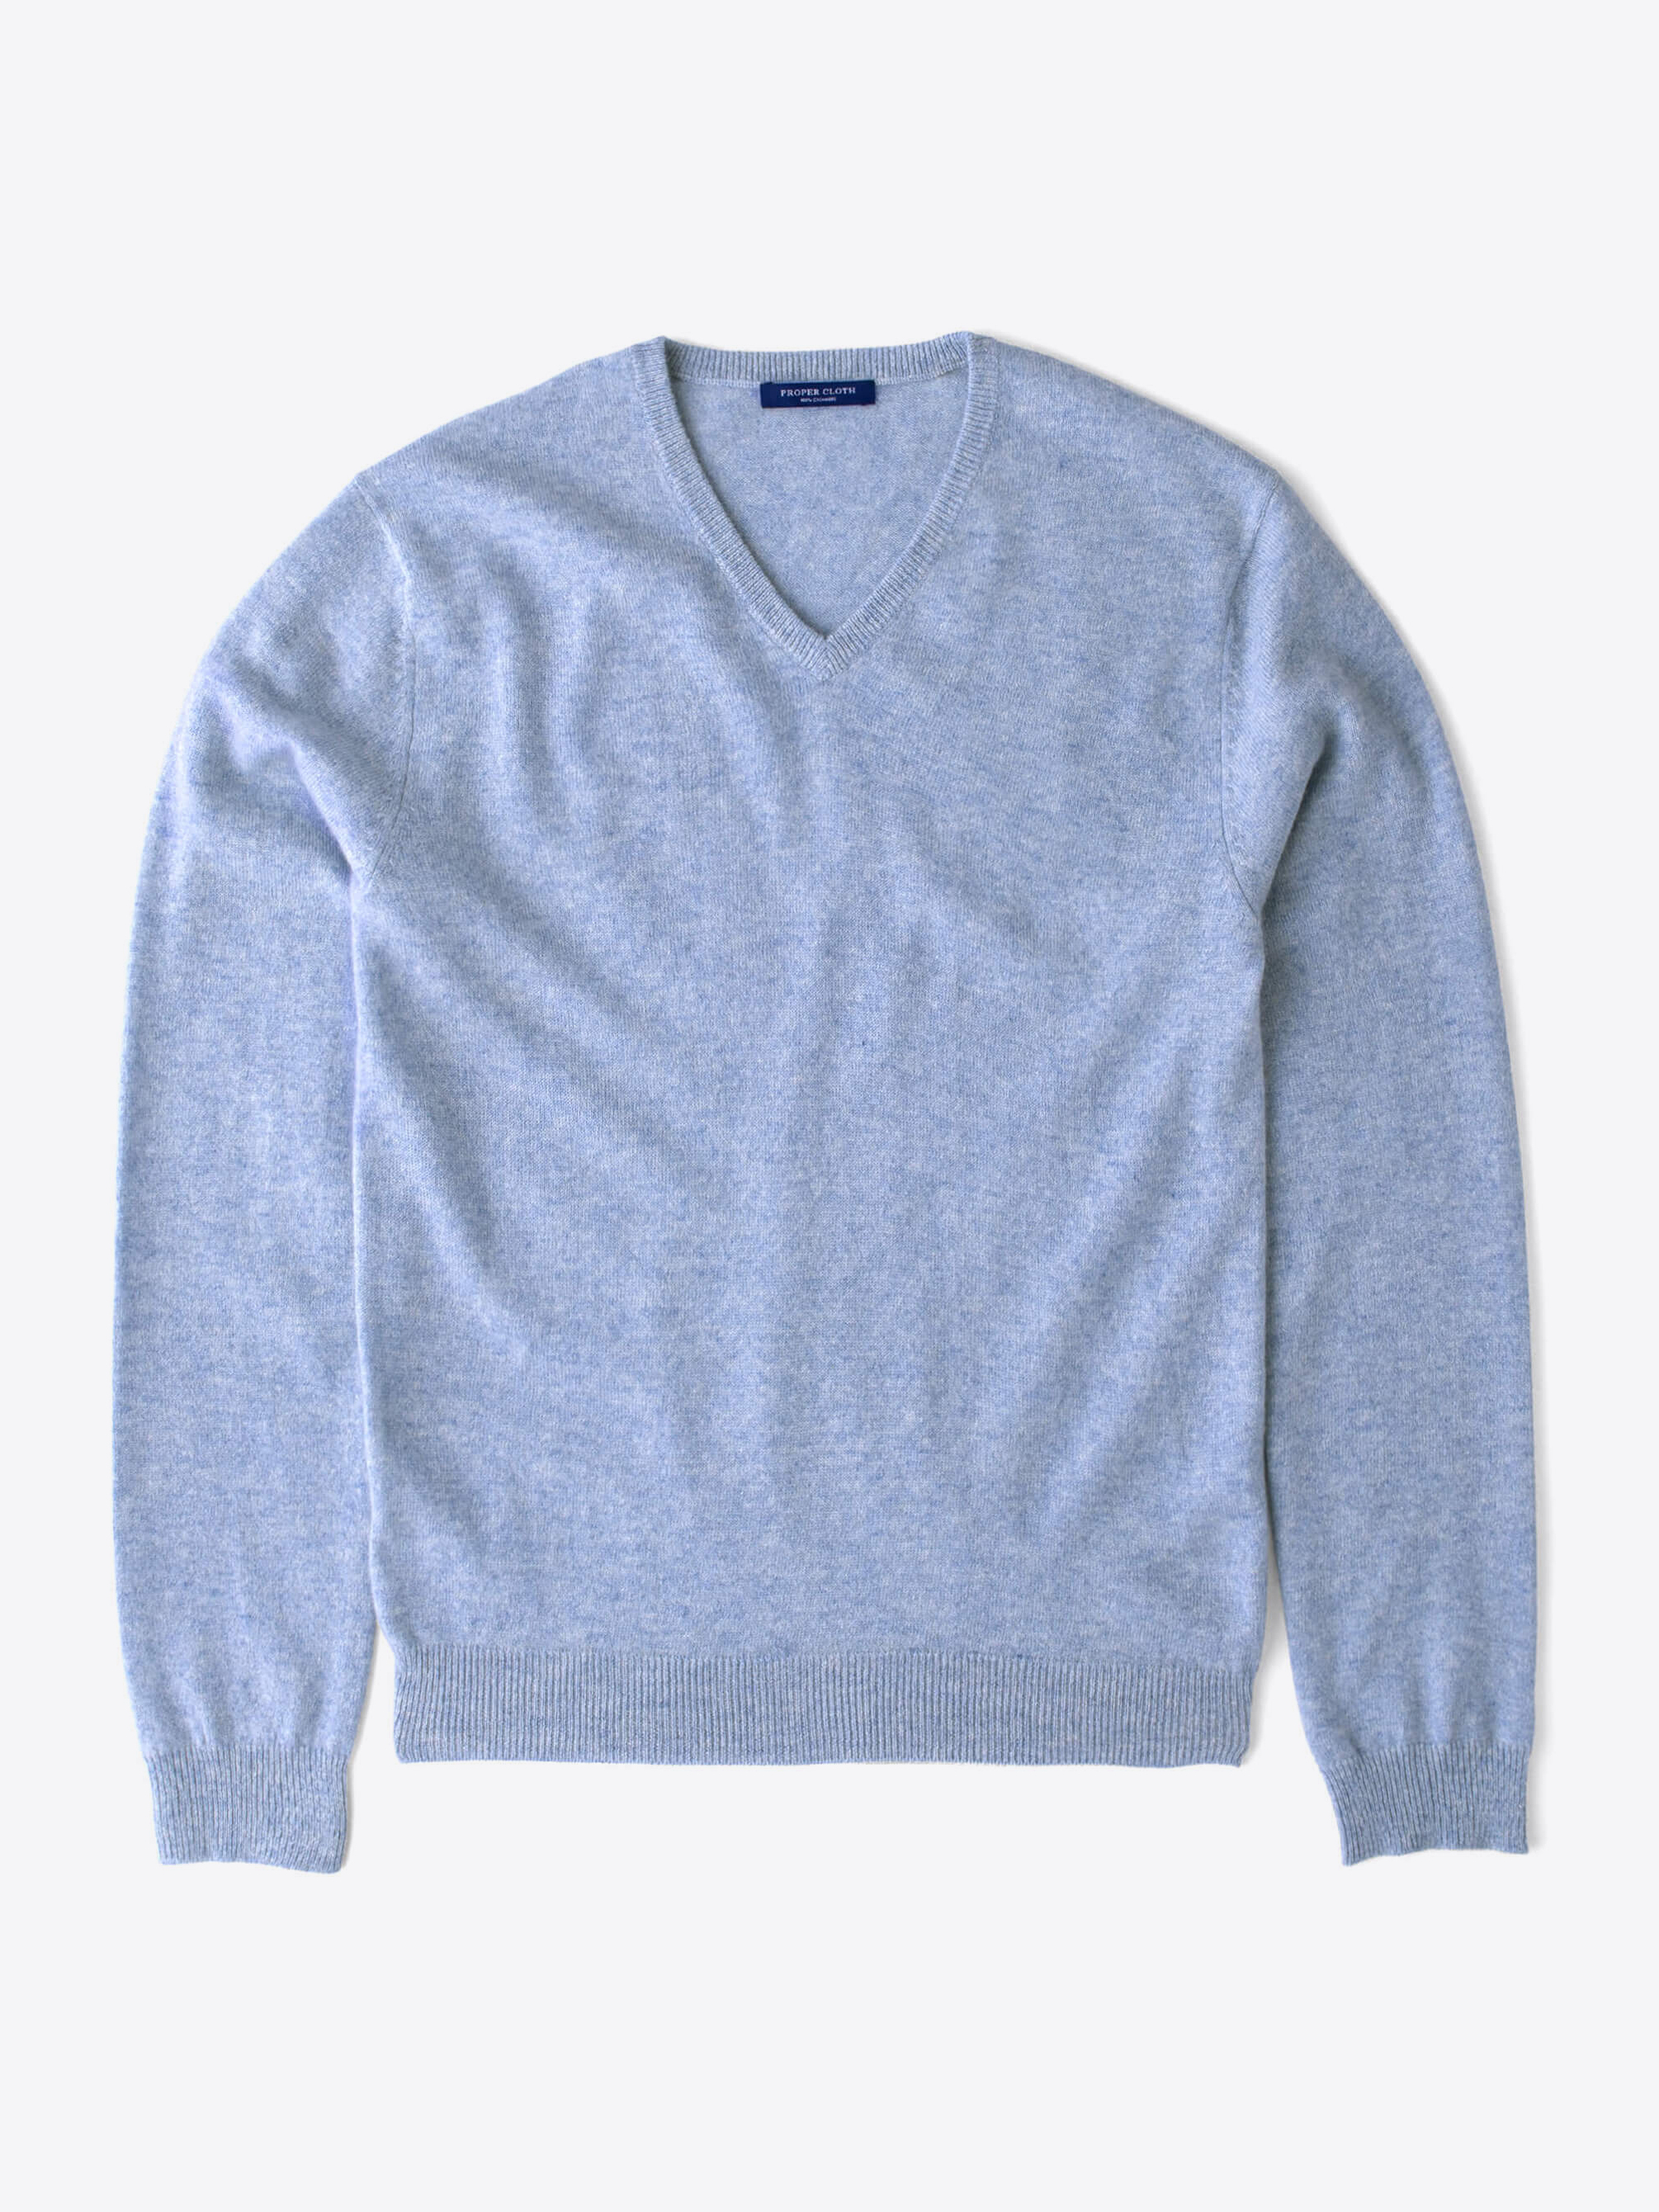 Zoom Image of Light Blue Cashmere V-Neck Sweater